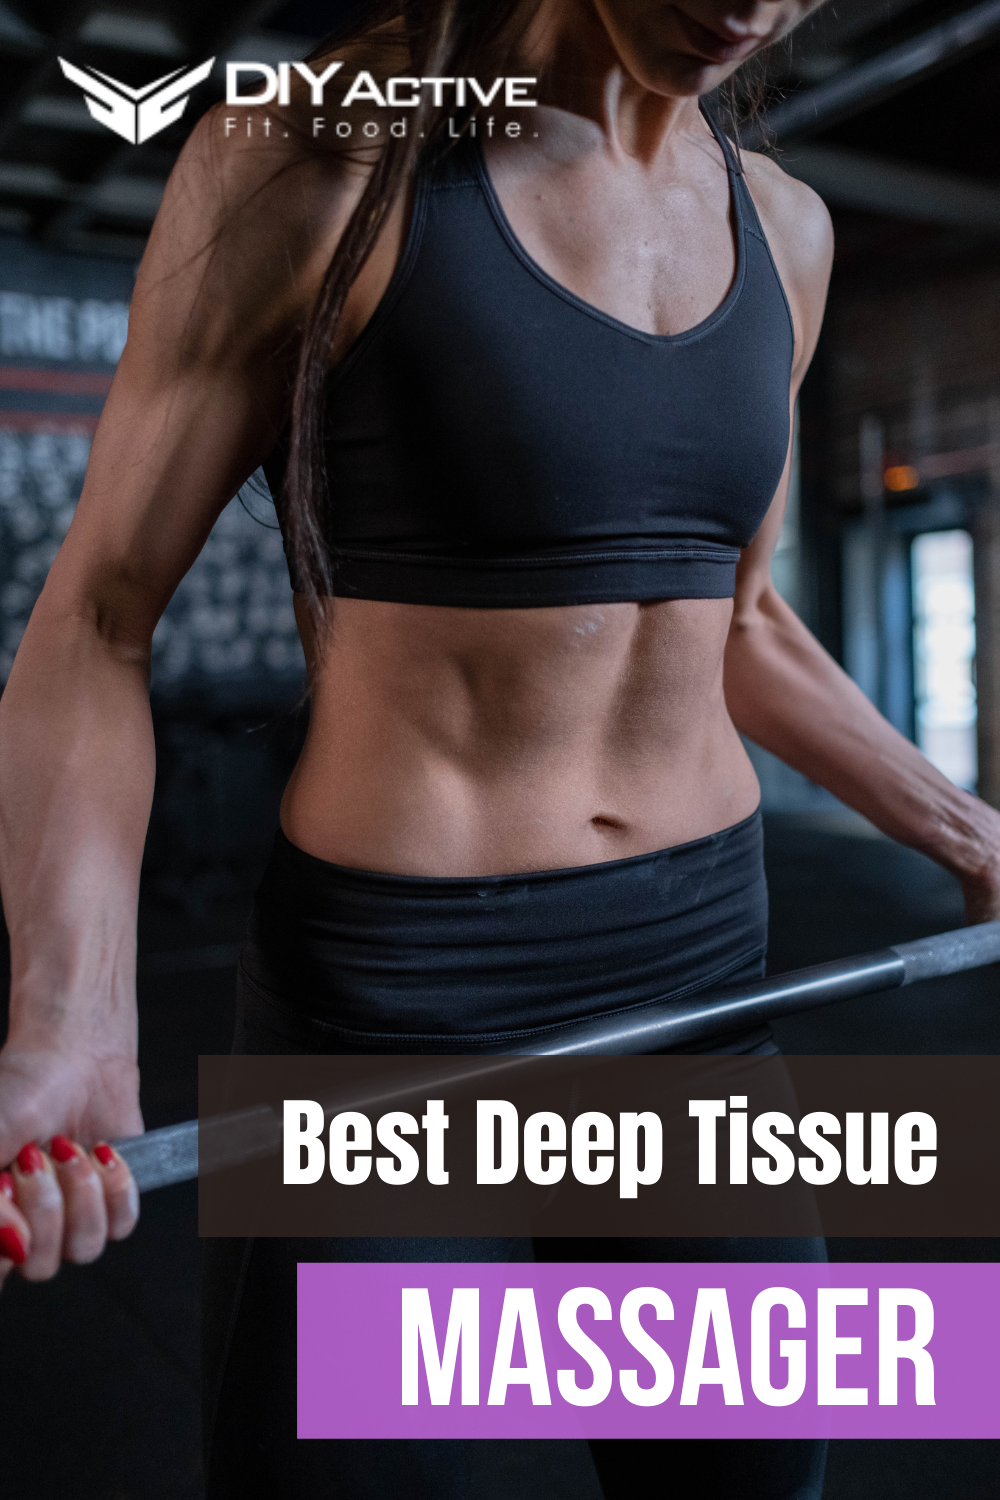 Mebak 3 Massage Gun Review: Best Deep Tissue Massager